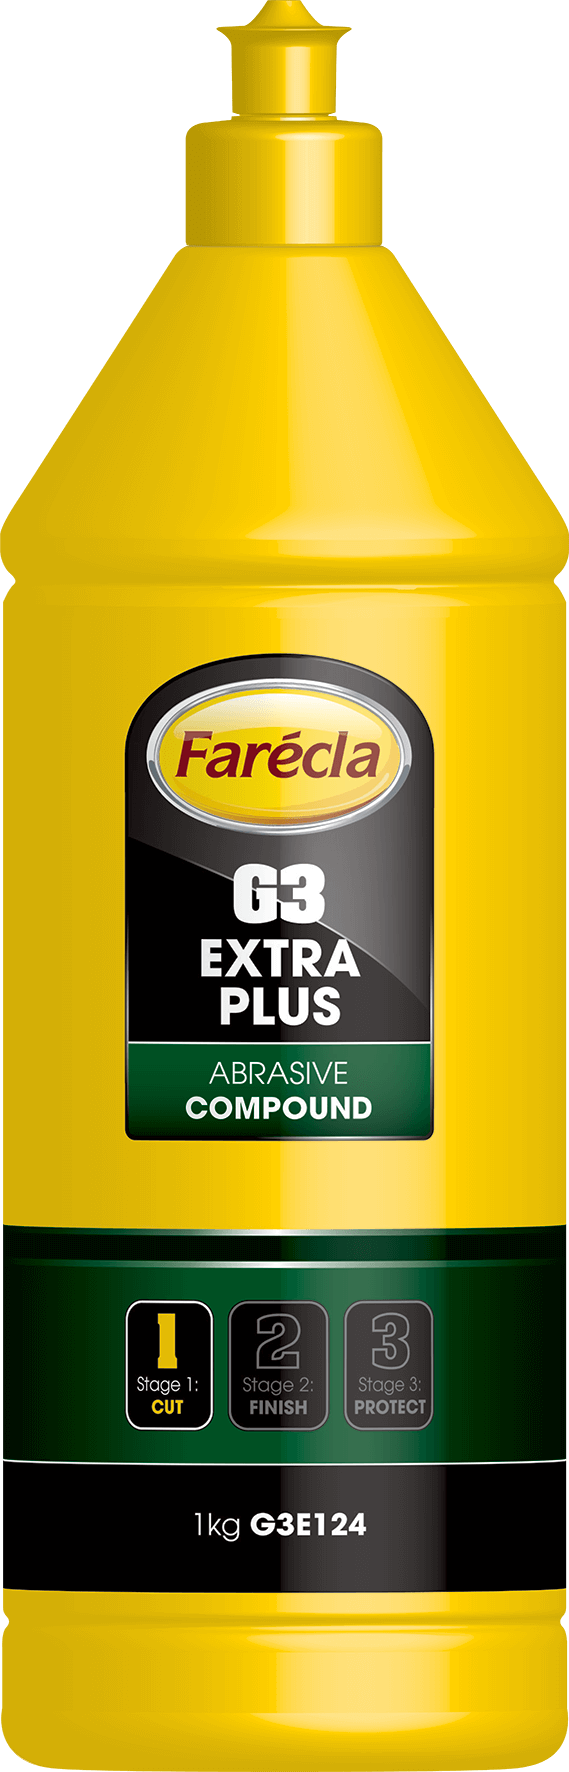 FARECLA G3 EXTRA PLUS 1kg